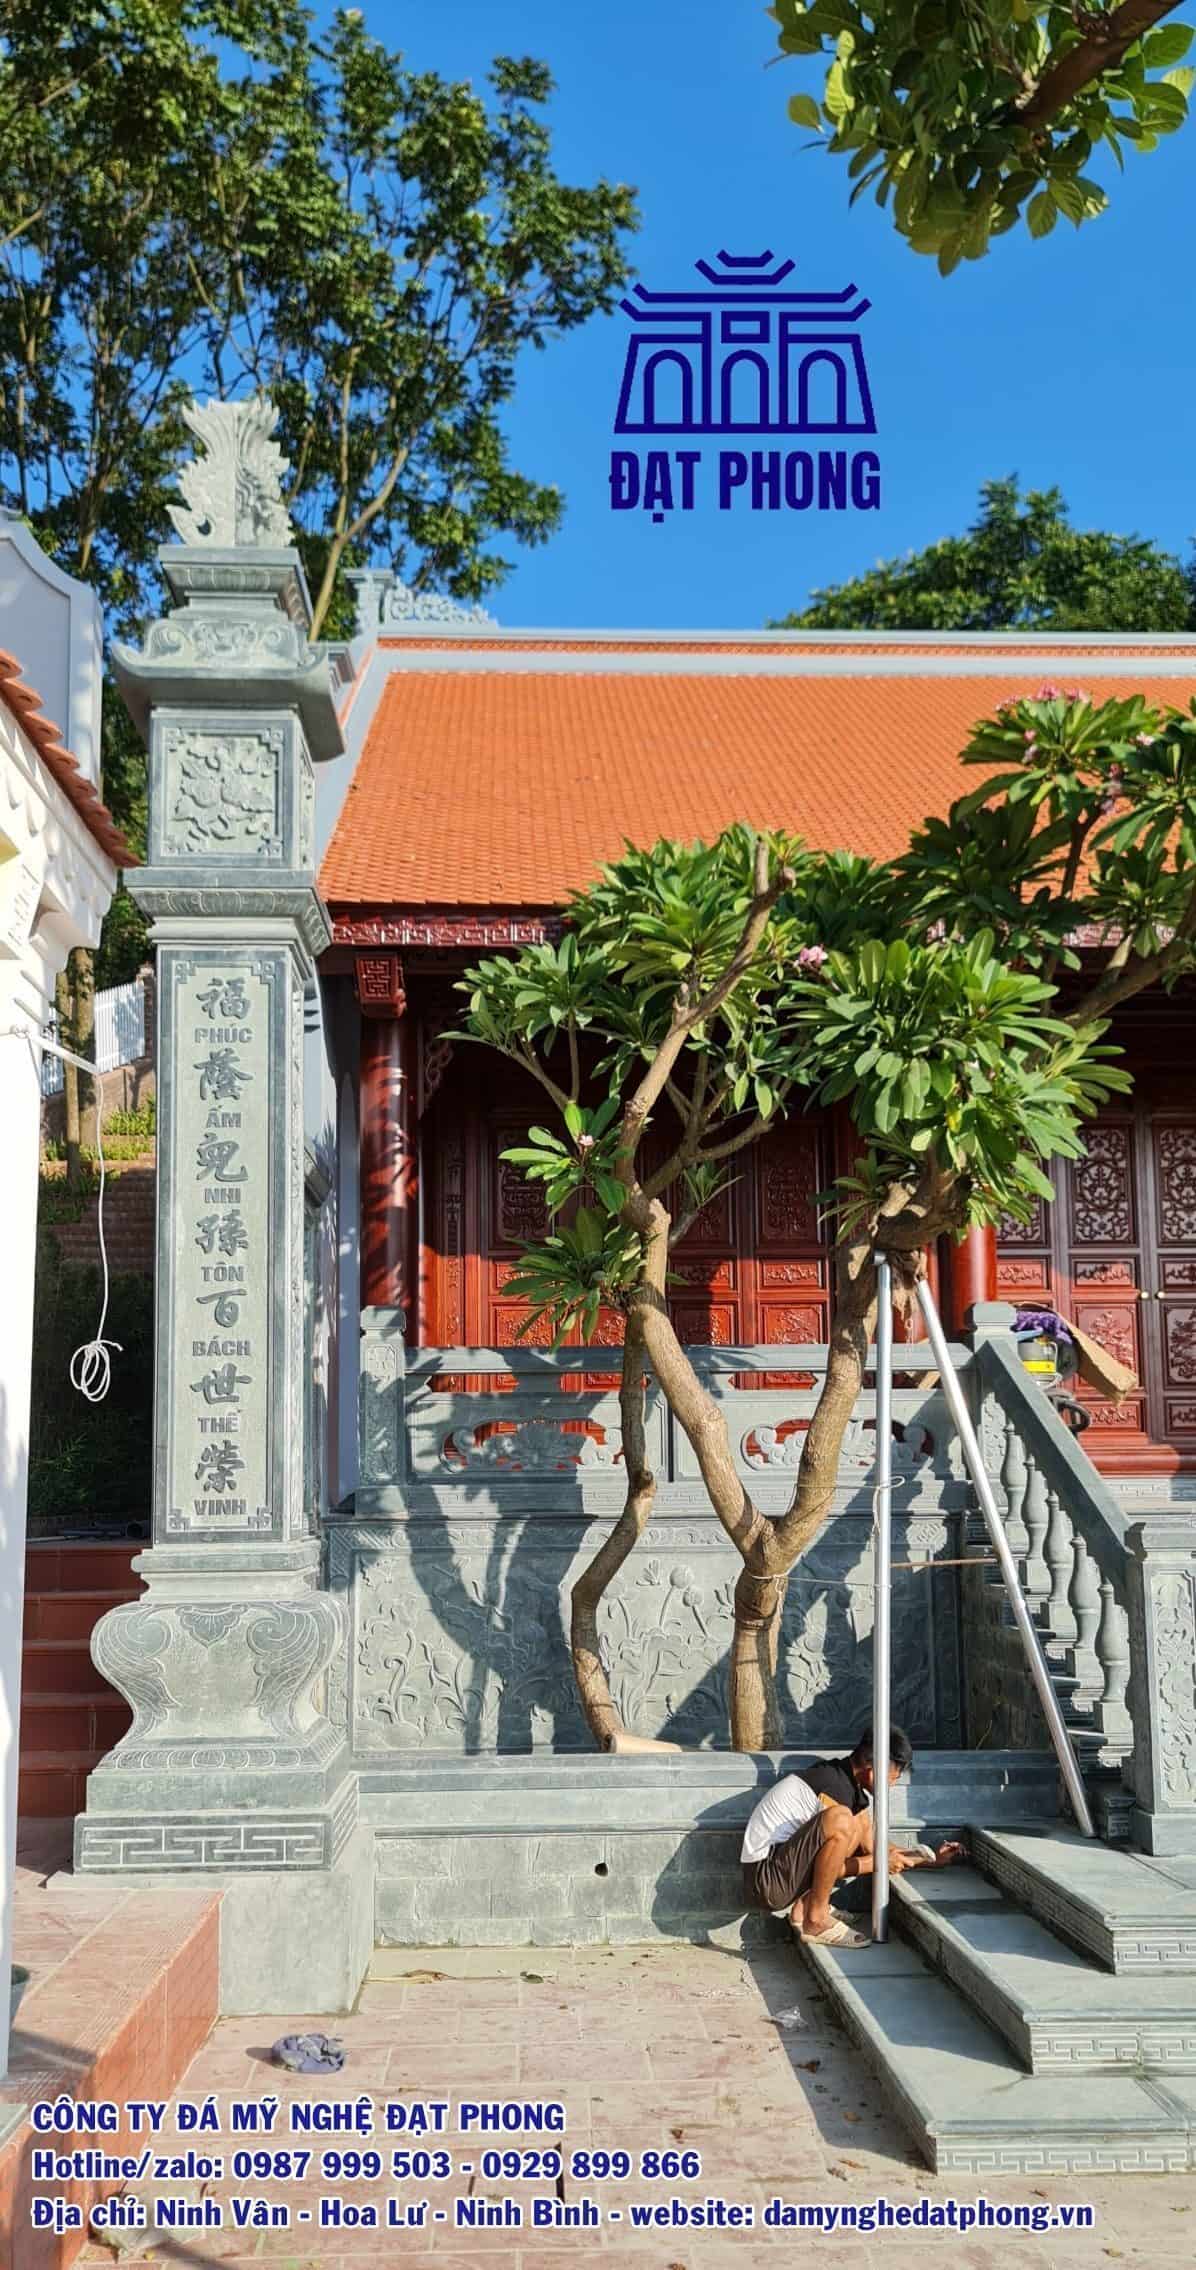 Nhà thờ Bắc Giang do Đá mỹ nghệ Đạt Phong thi công lắp đặt hạng mục đá